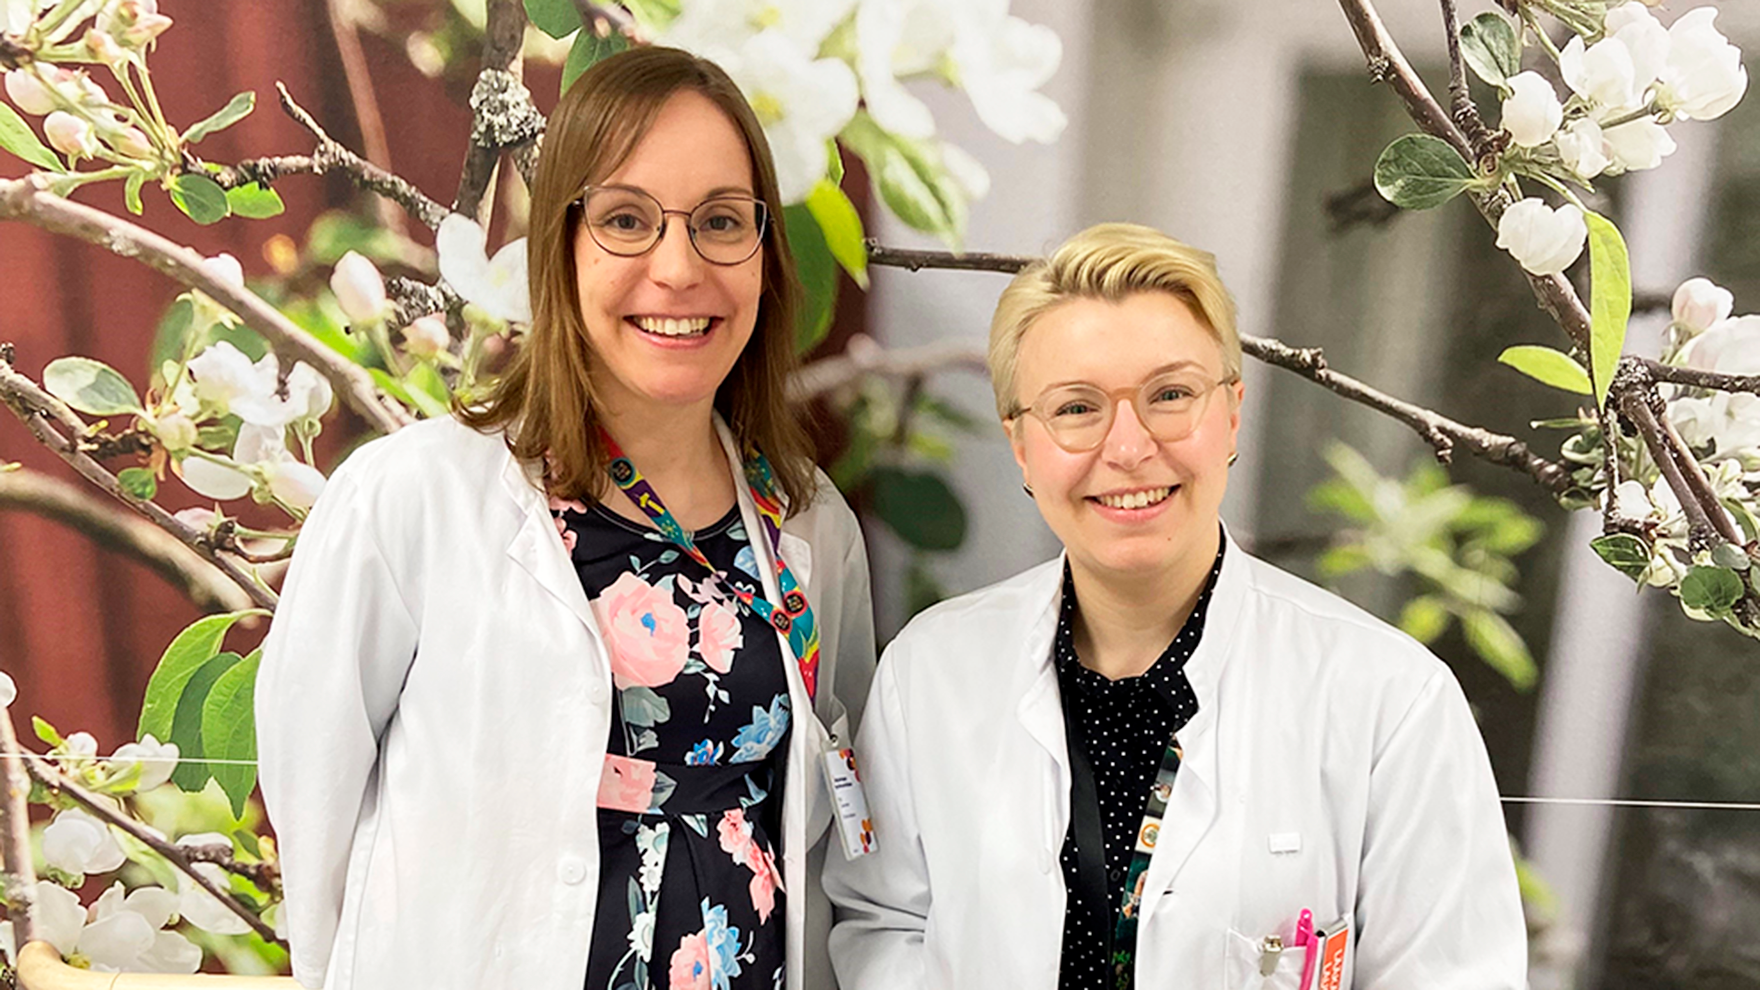 Kuvassa ovat lääkärintakki yllään Elli Toivonen ja Laura Seppälä. Taustalla näkyy valokuvatapetti, jossa on valkoisenaan kukkivia oksia.